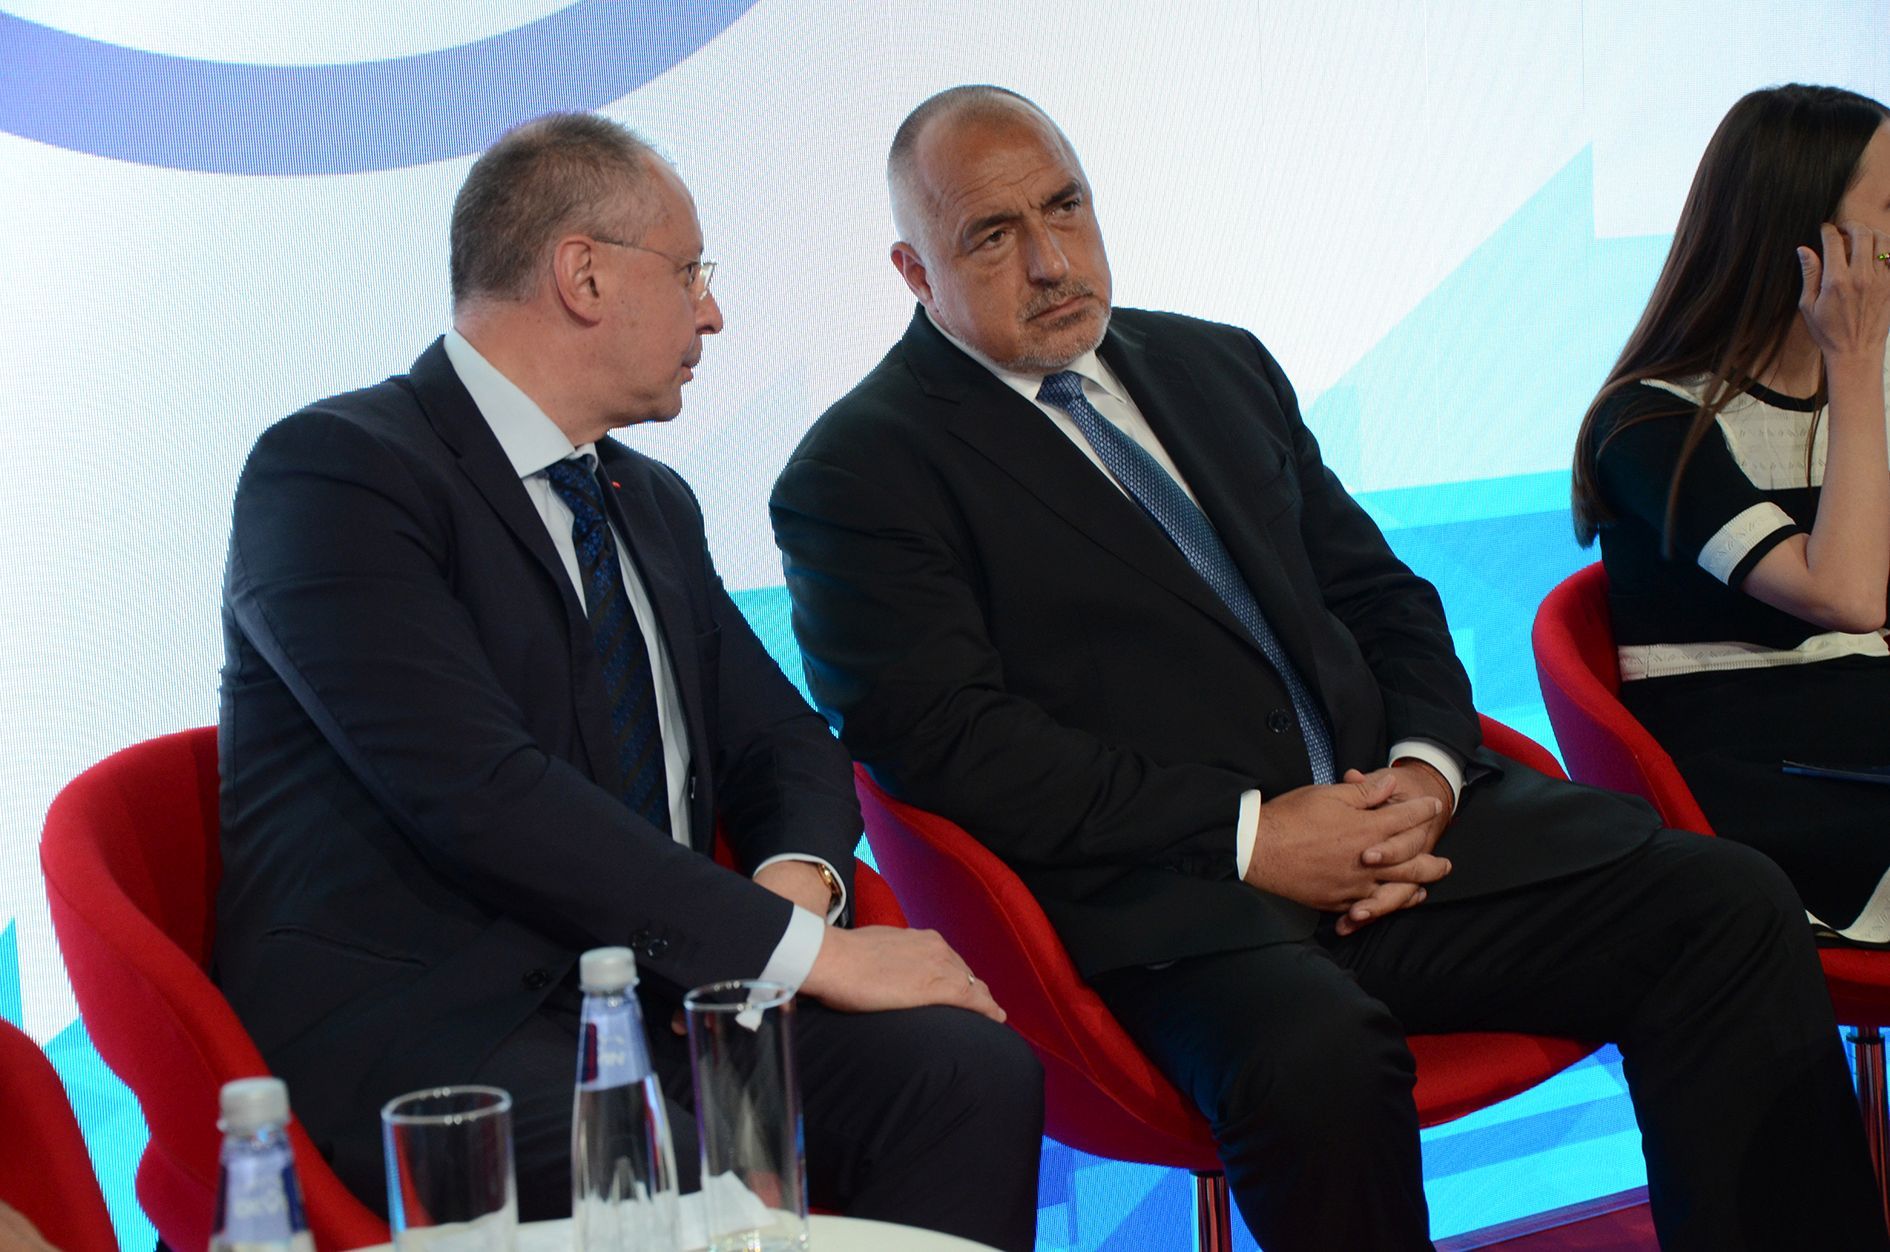 Лидерът на ПЕС Сергей Станишев и премиерът Бойко Борисов на конференцията "Европа отново на път - икономическата логика срещу митовете"